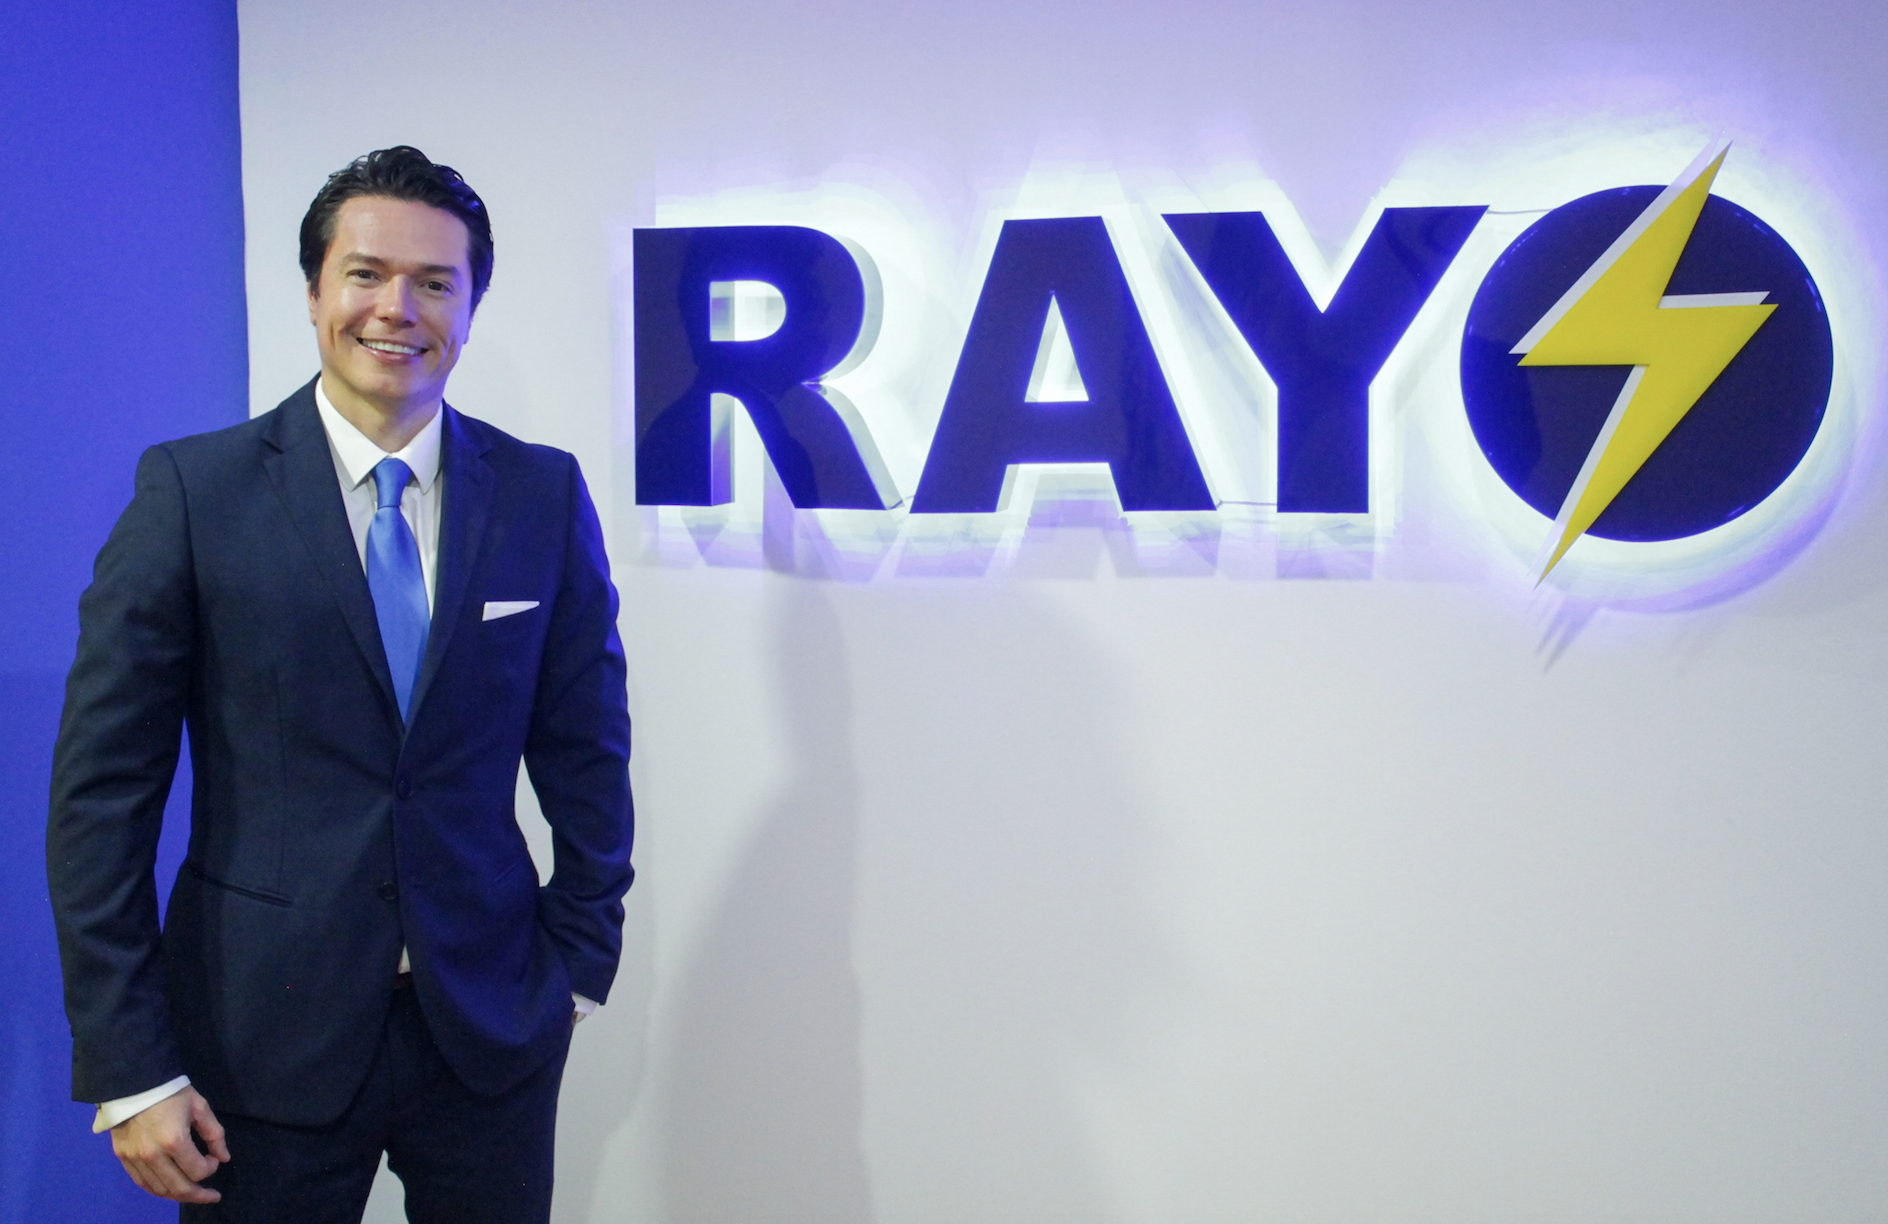 Rayo - Nuevo miembro de Colombia Fintech